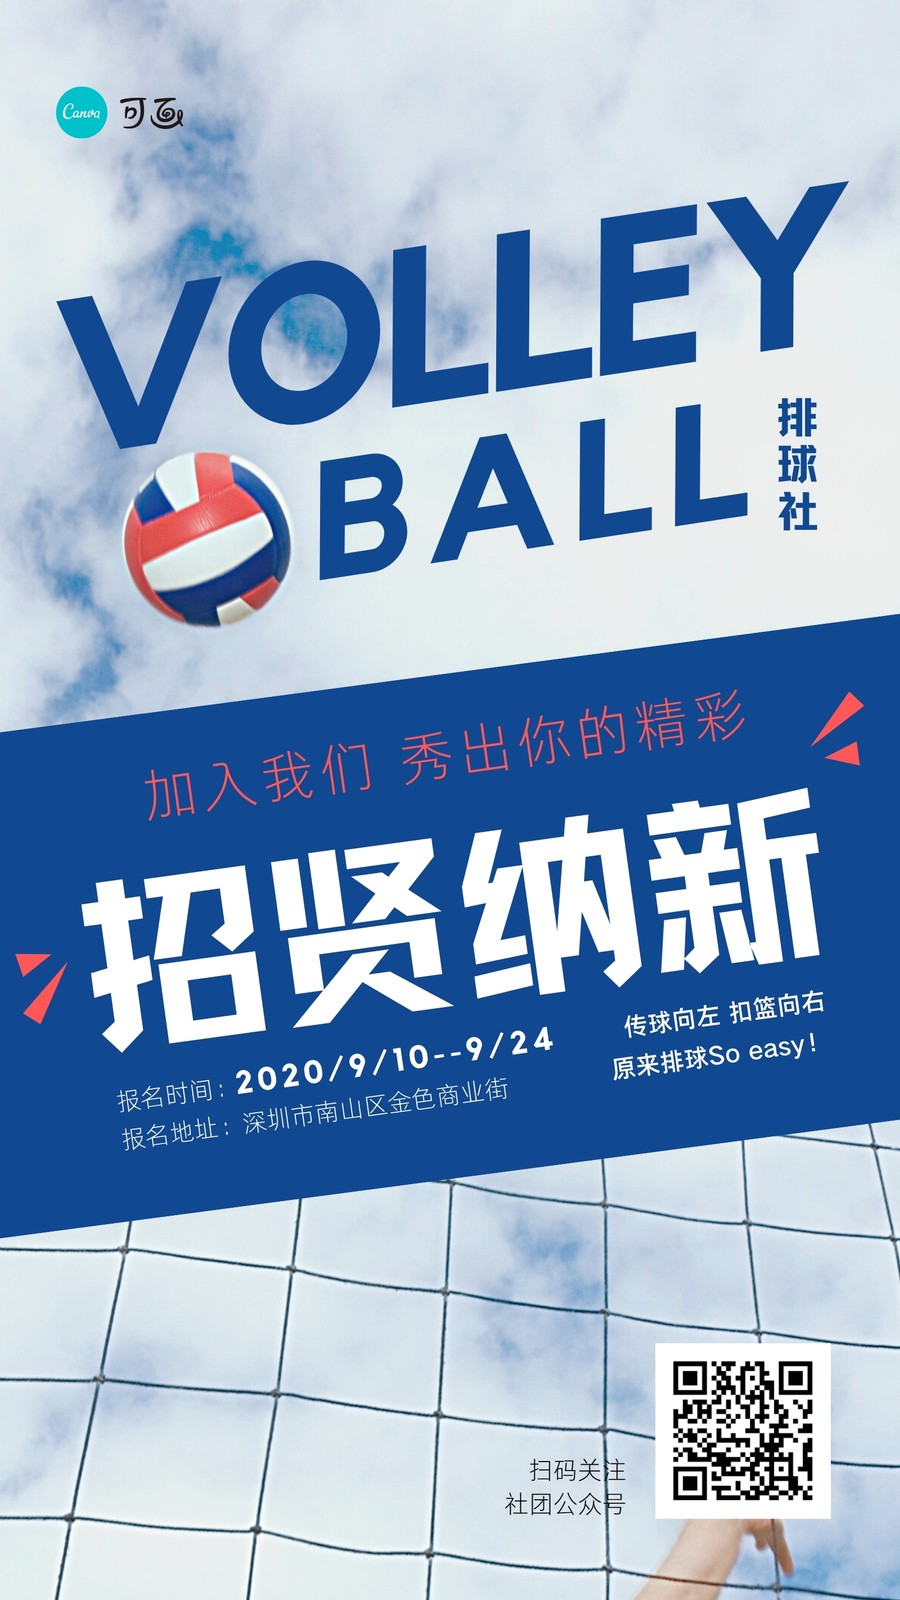 蓝色排球社排球网照片校园中文手机海报